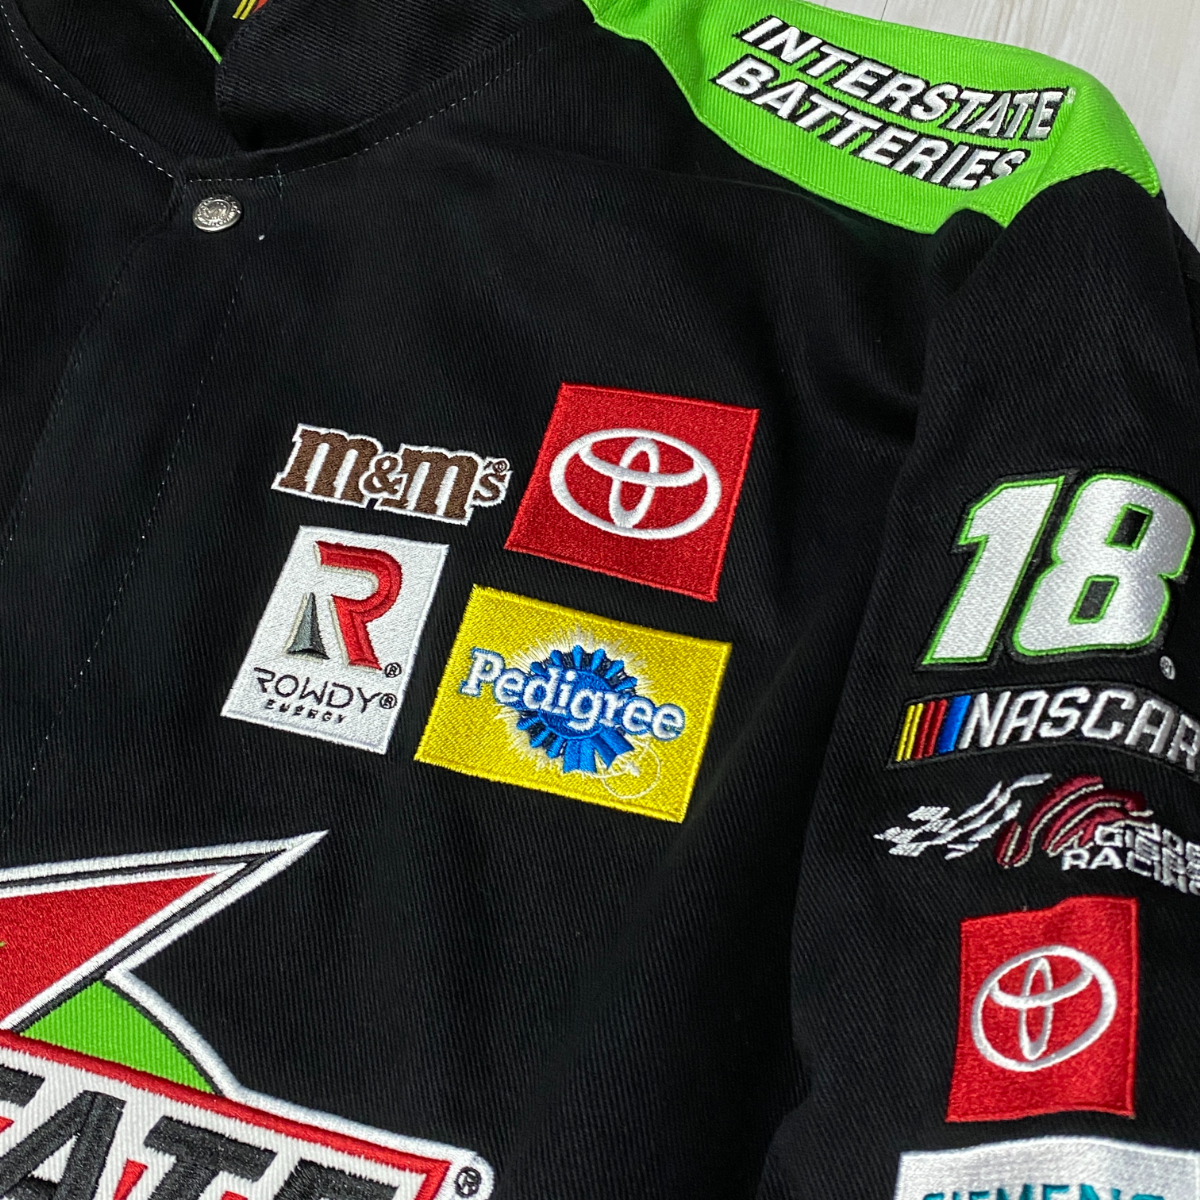 USA正規品 【2XL】 NASCAR ナスカー JHデザイン INTERSTATE BATTERIES レーシングジャケット Kyle カイルブッシュ USA最強モータースポーツ_画像5